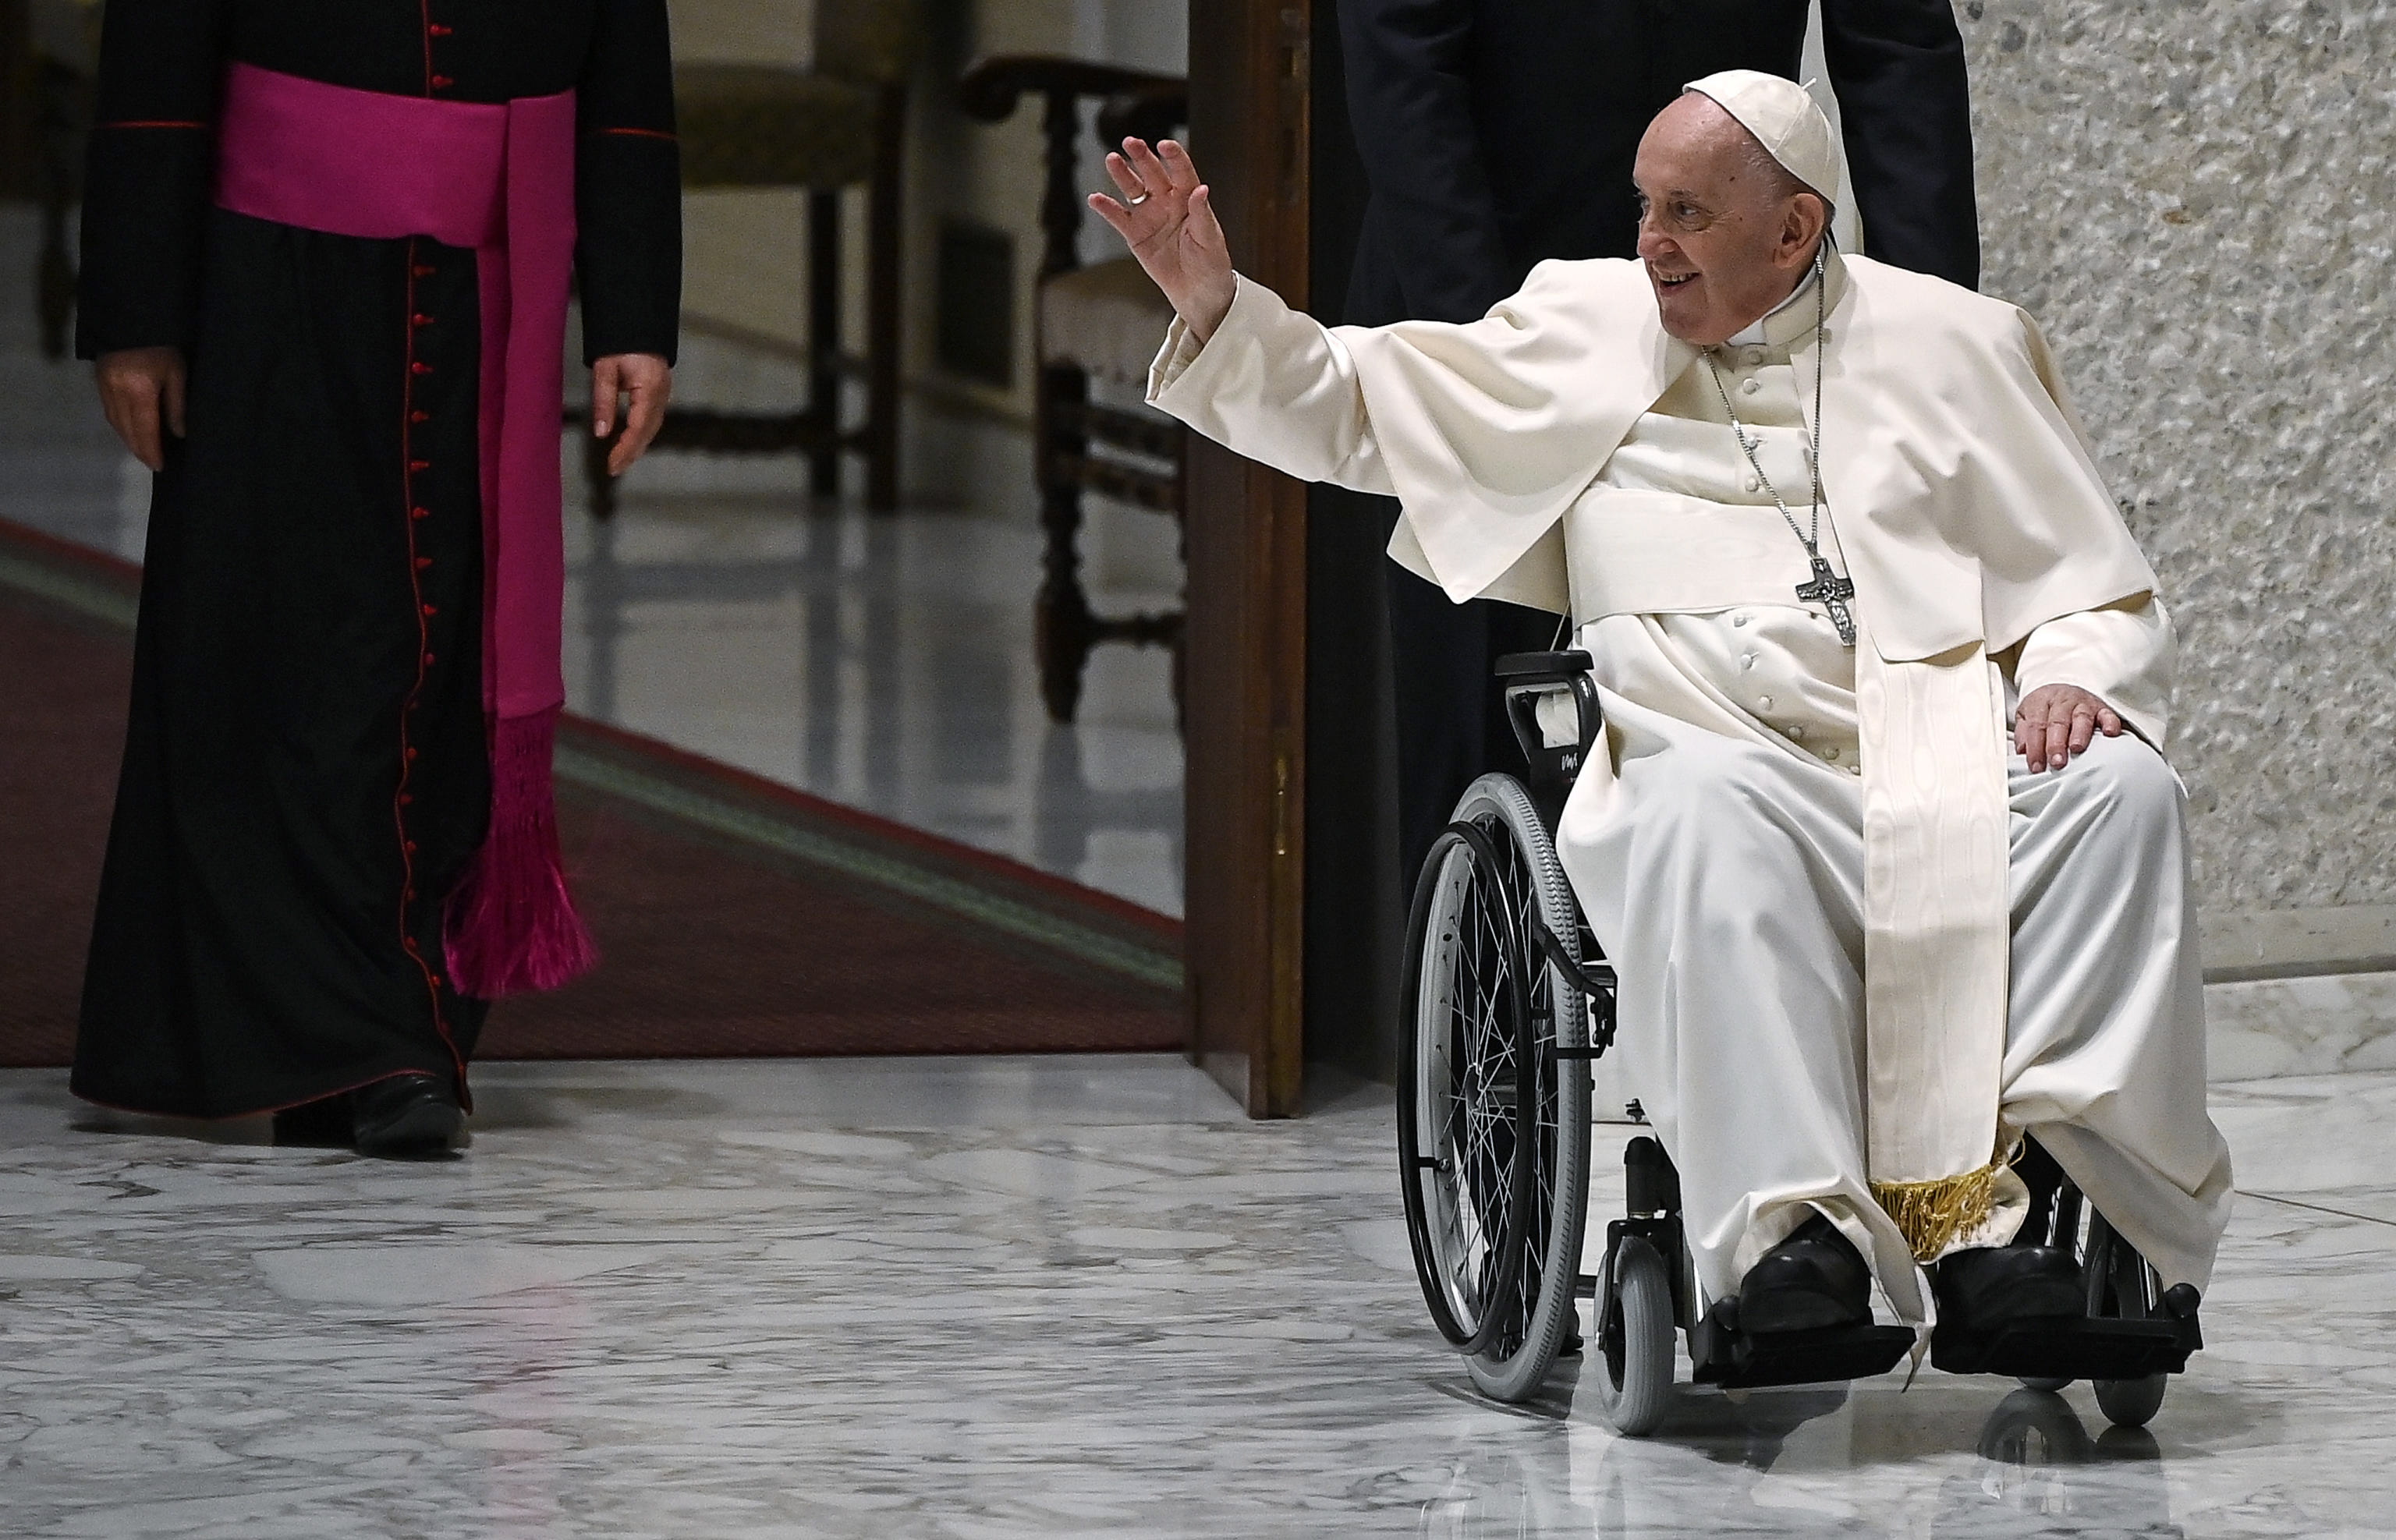 El Papa Francisco, en una silla de ruedas, asiste a una audiencia con peregrinos de Profesores de Religión Filippini en el salón Pablo VI del Vaticano. Foto de archivo: EFE/Riccardo Antimiani